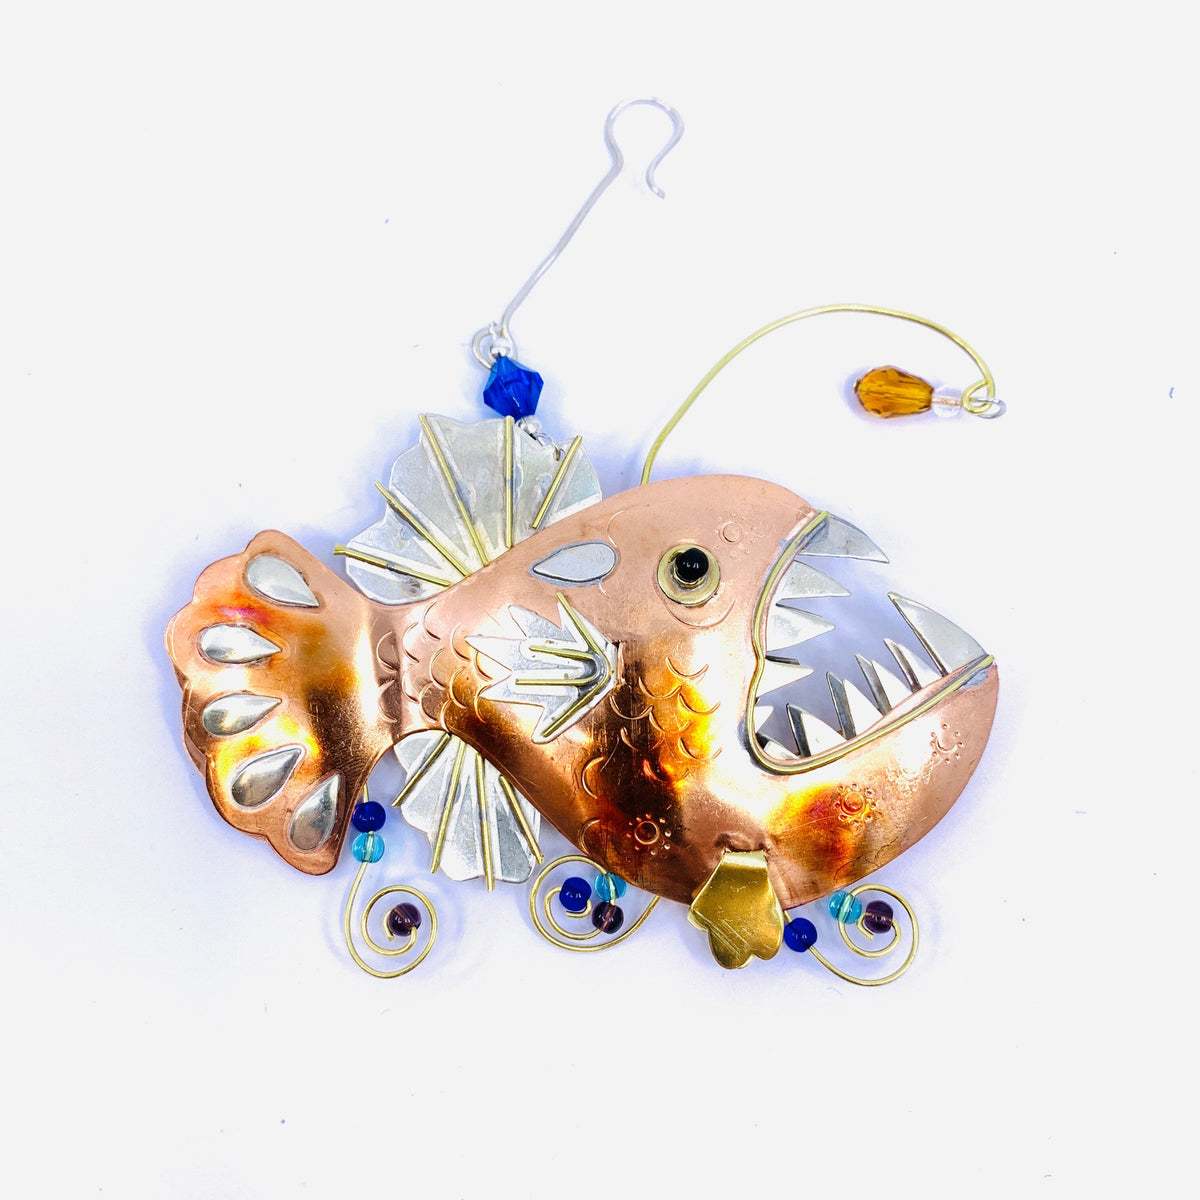 Mixed Metal Ornament, Angler Fish 9 Ornament Pilgrim Imports 